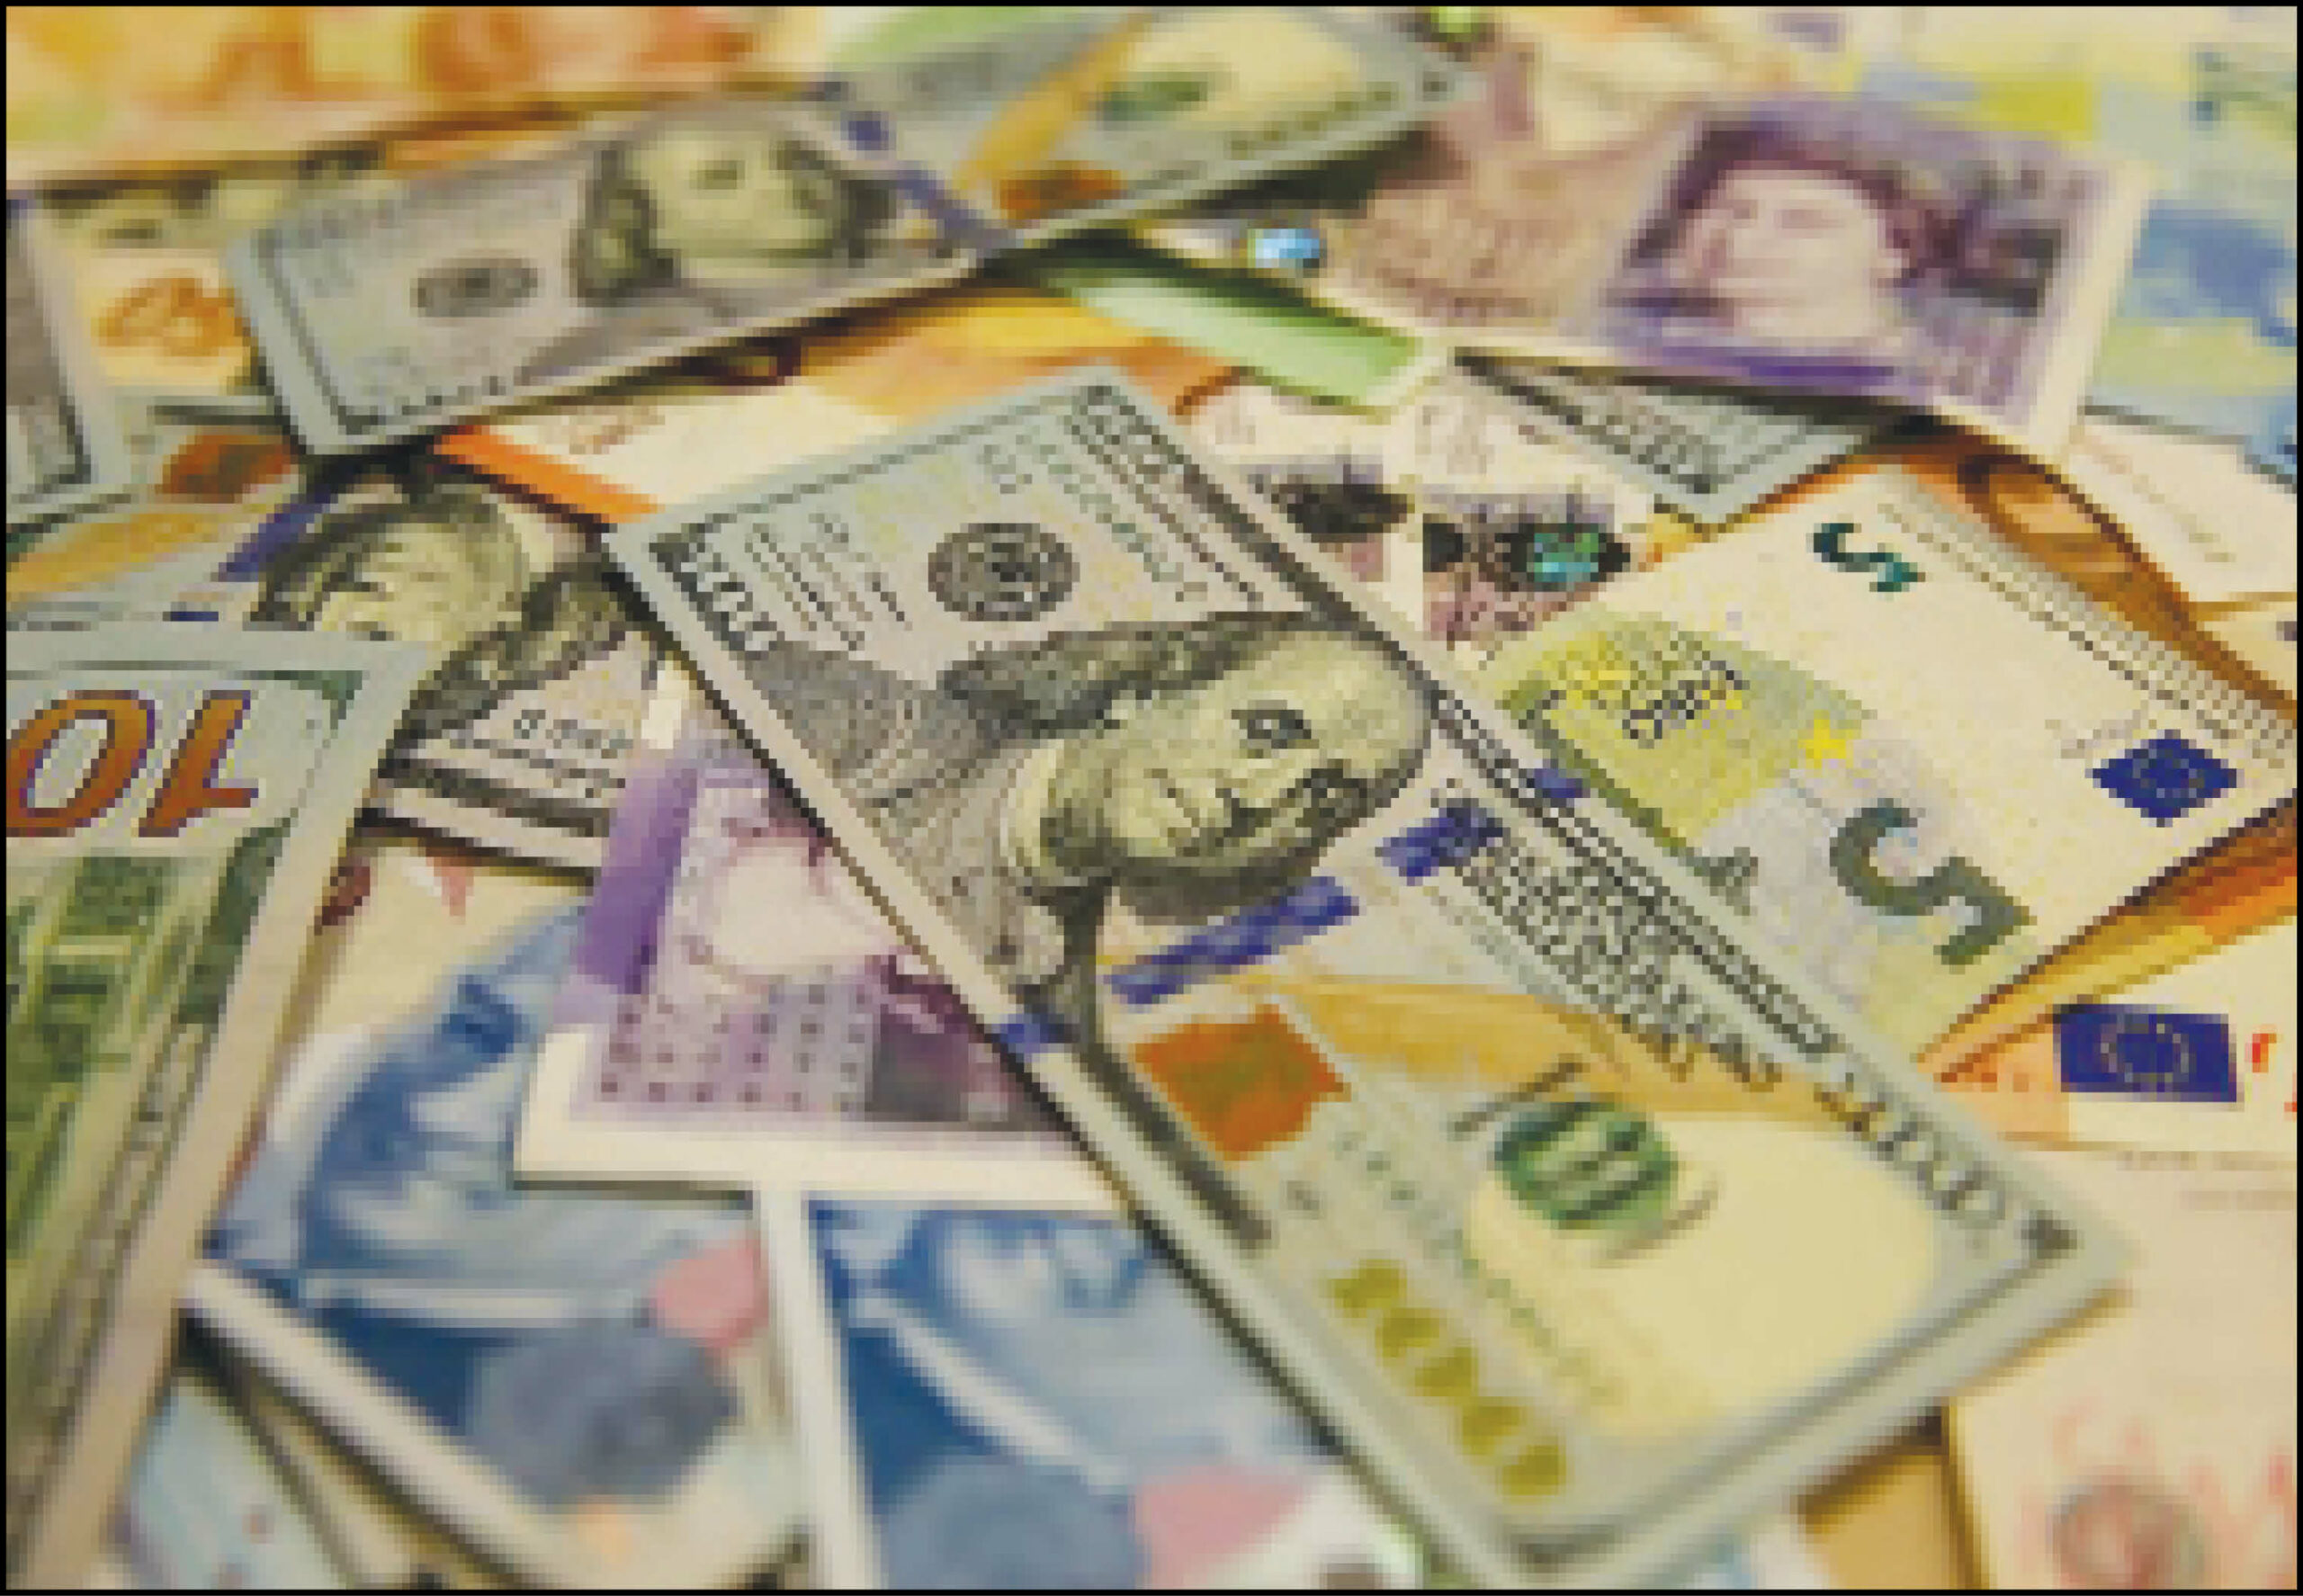 تخصیص ارز از ابتدای سال تا ۲۰ آبان به ۵۲میلیارد دلار رسید